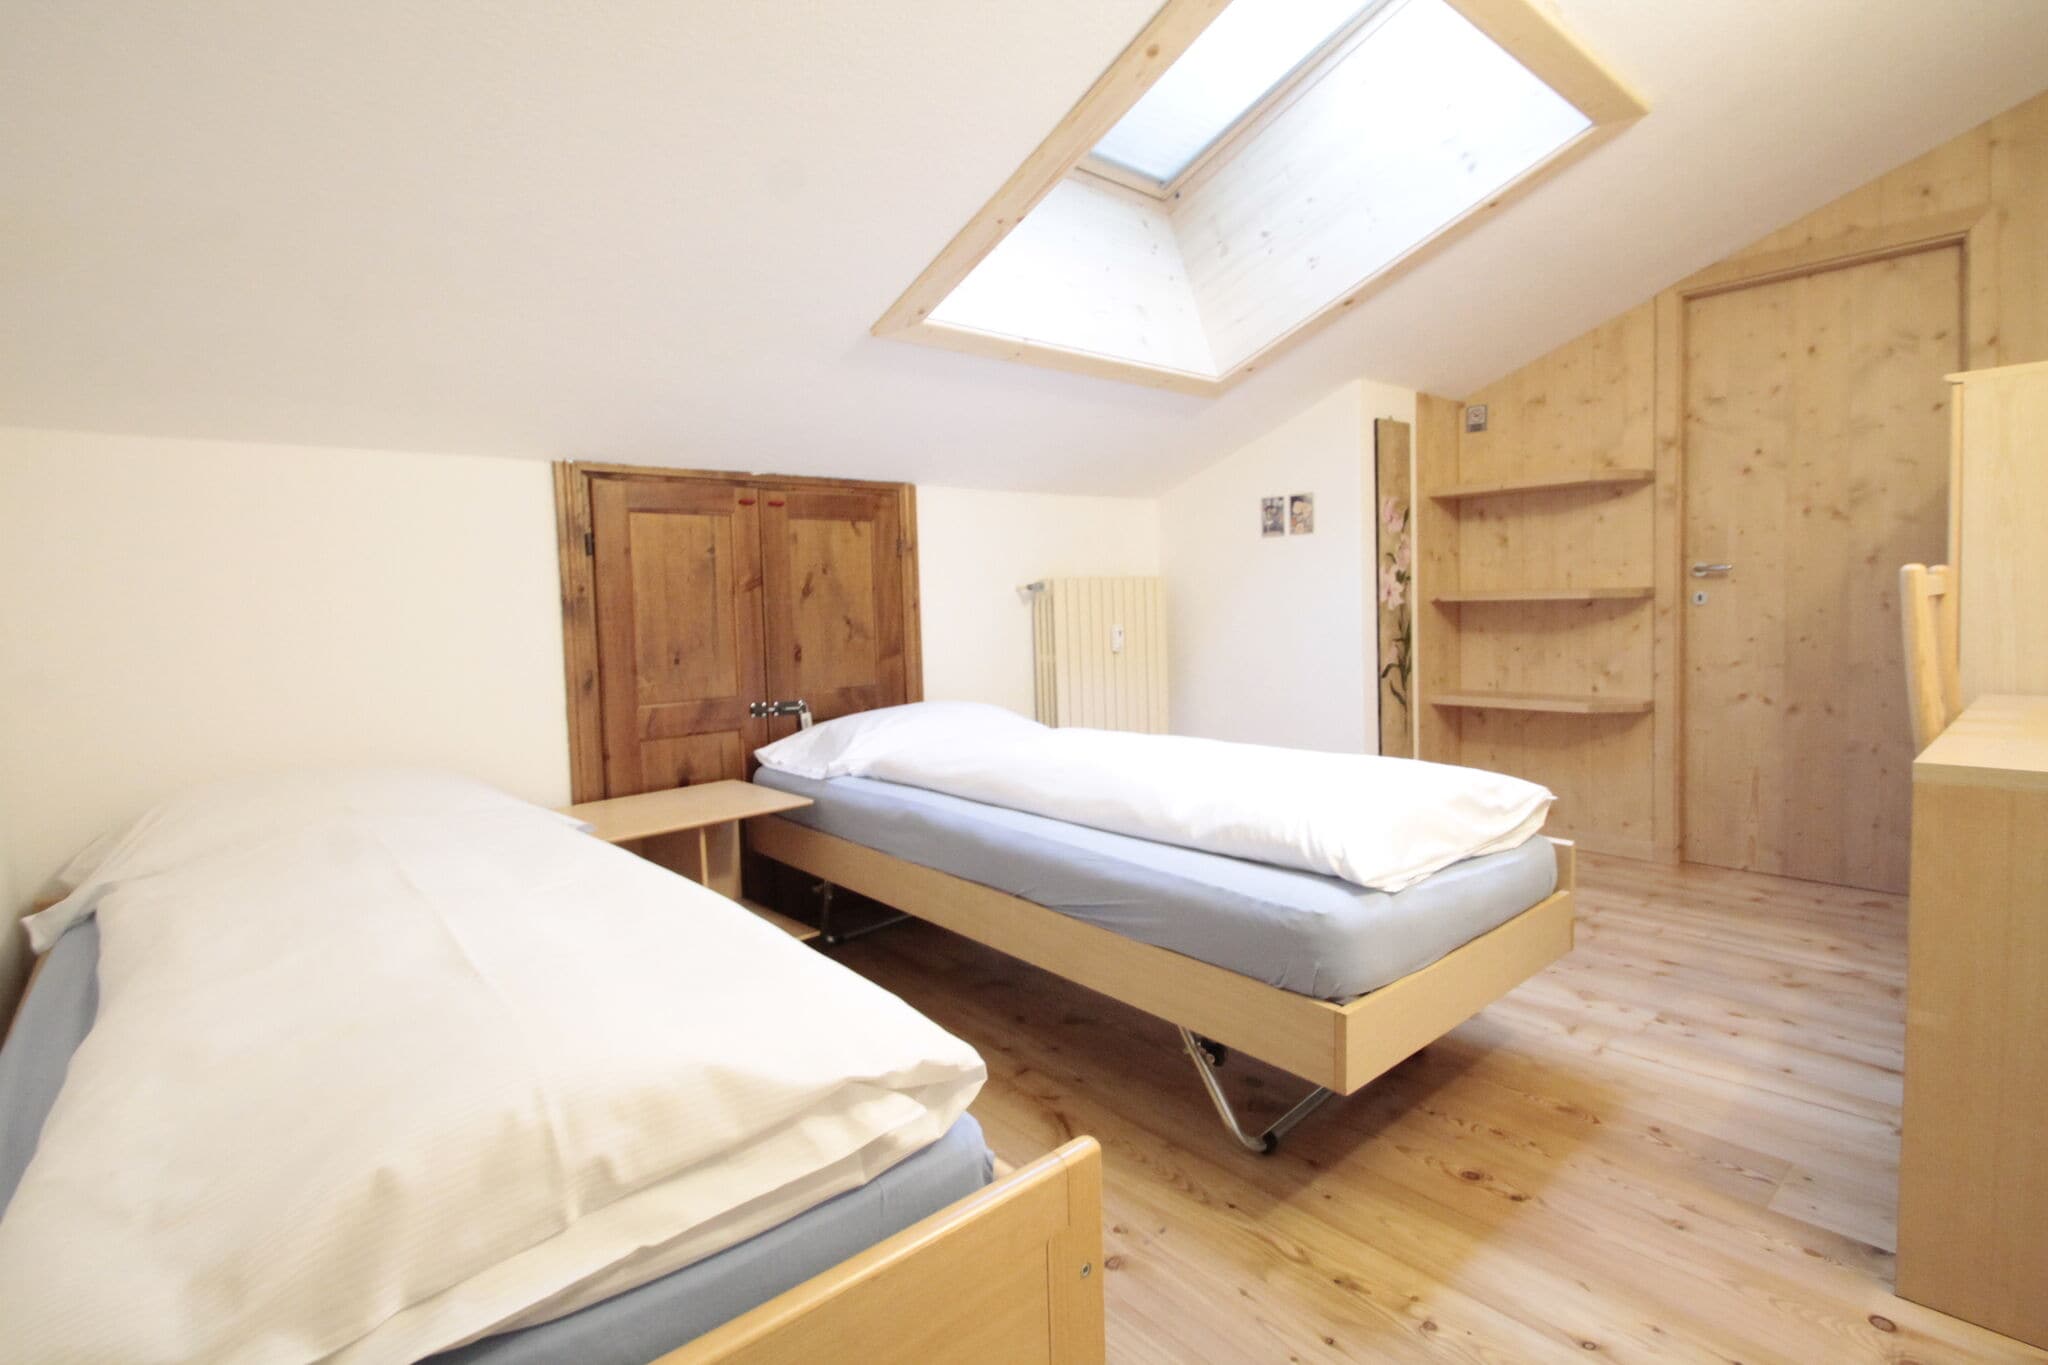 Brand new apartment in Livigno, near ski area